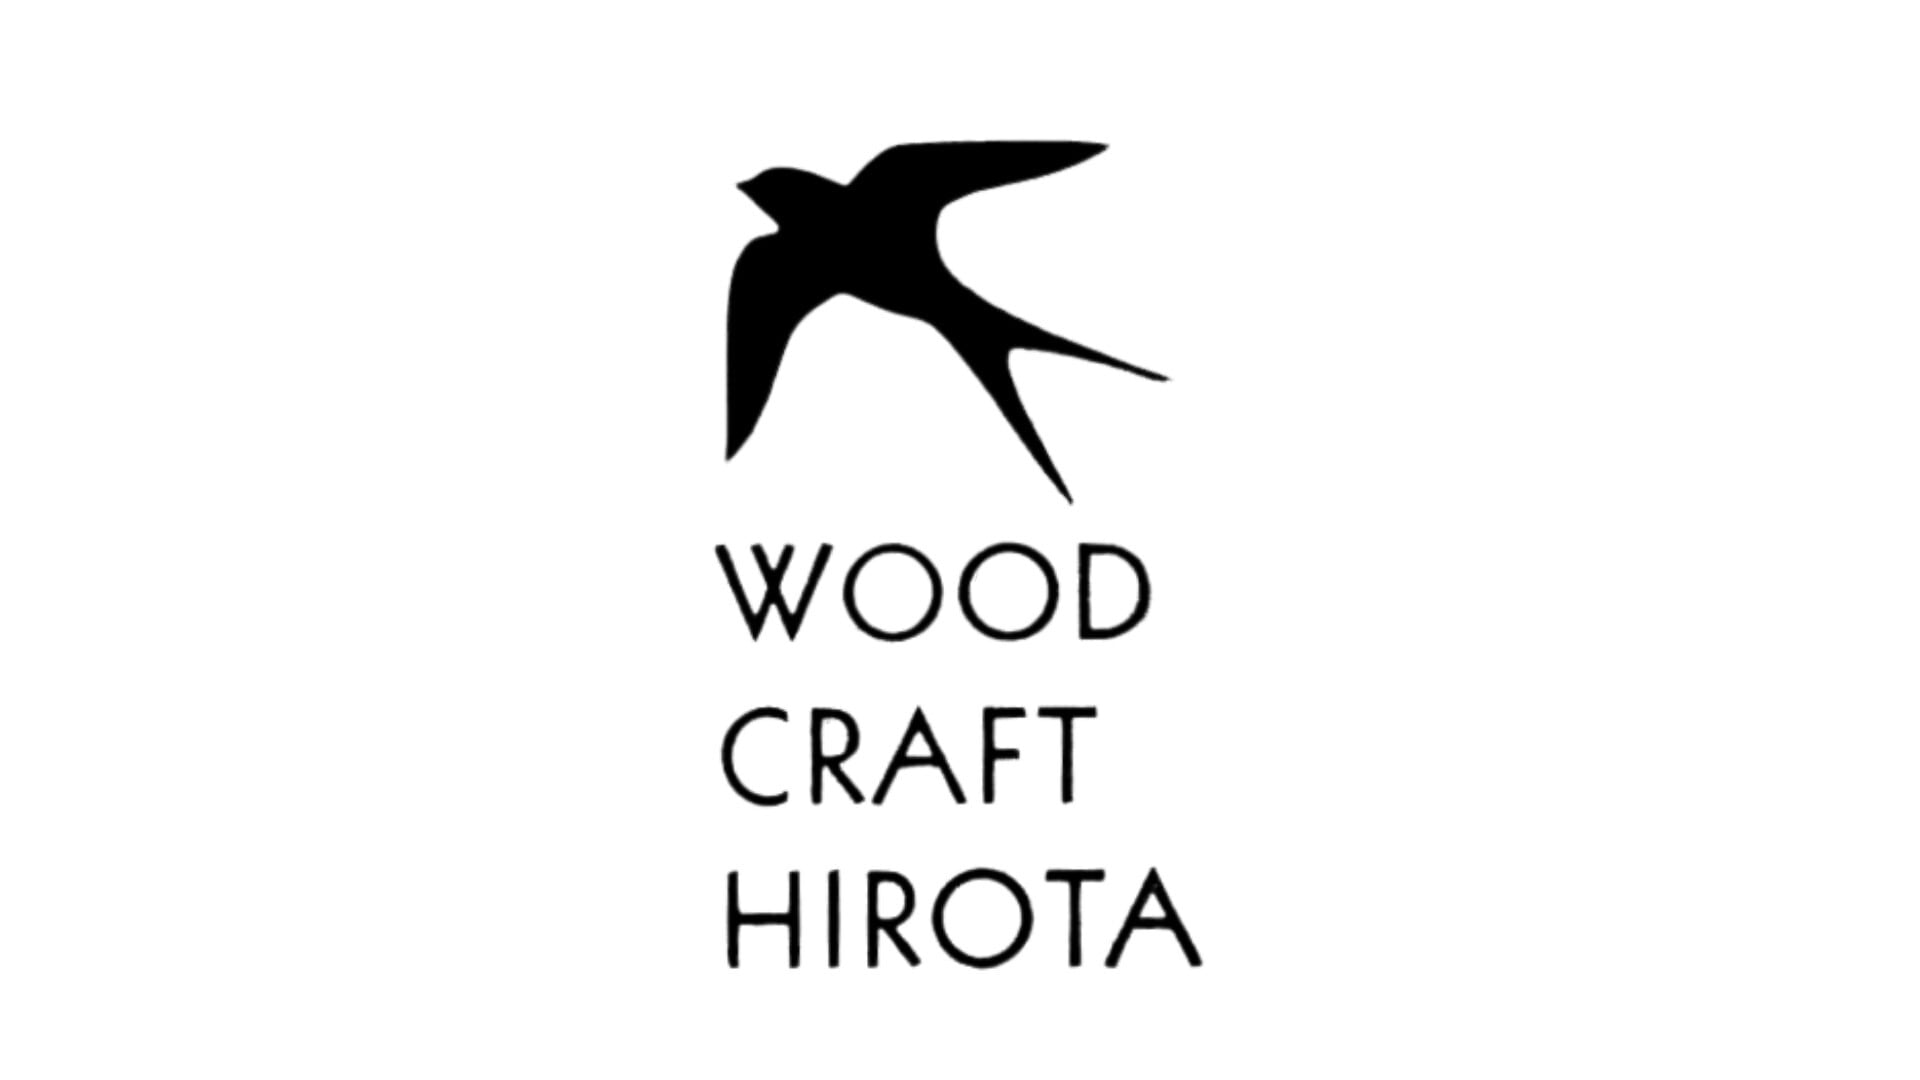 WOOD CRAFT HIROTA